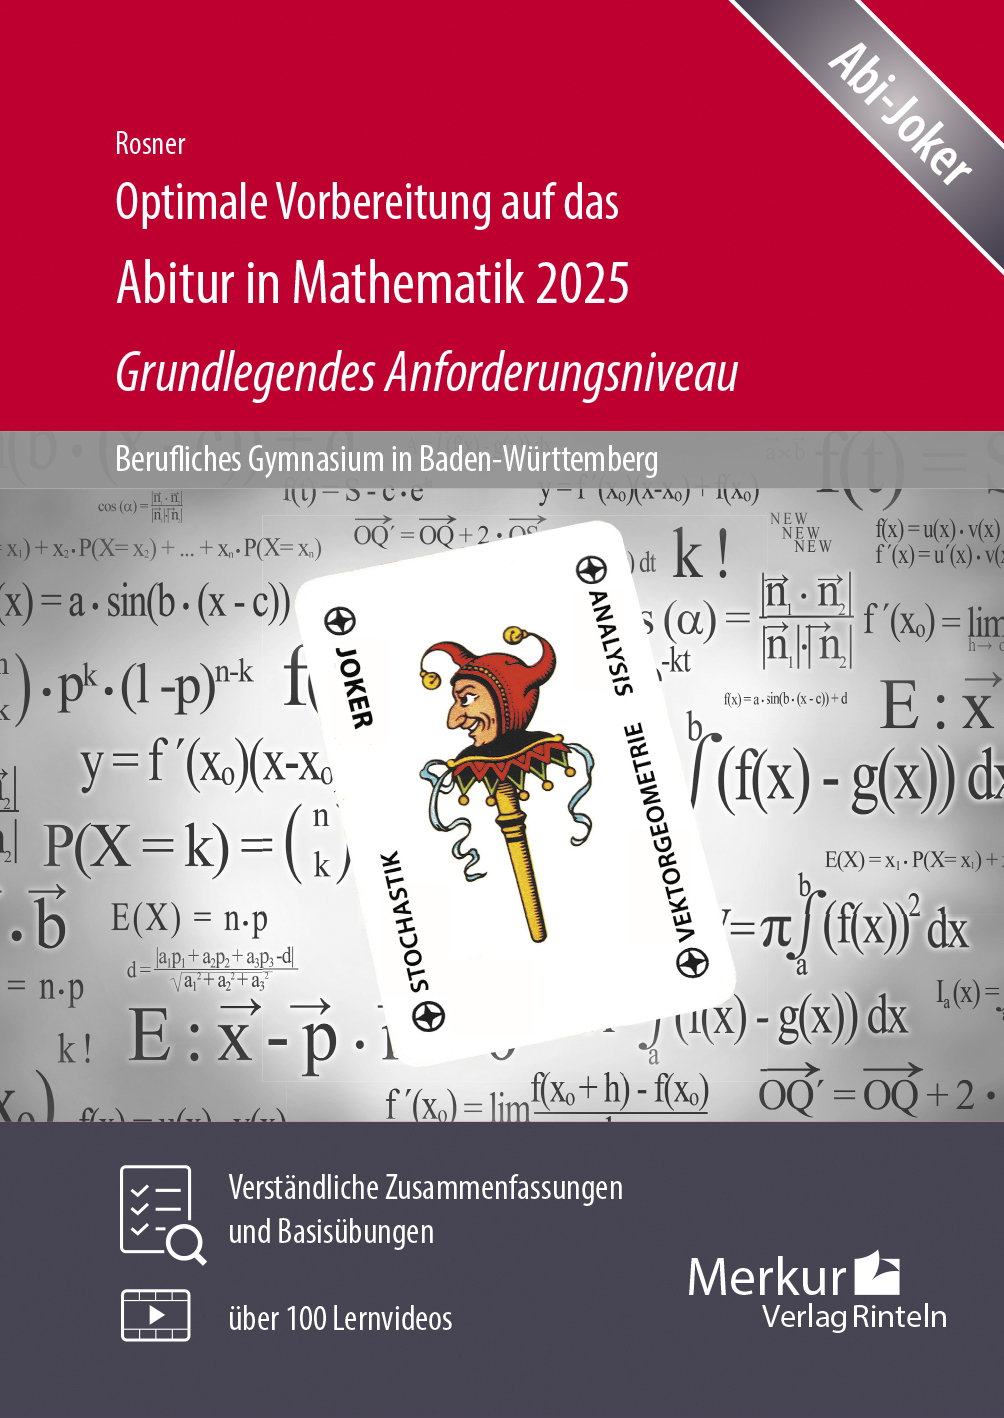 Optimale Vorbereitung auf das Abitur in Mathematik 2025 - Grundlegendes Anforderungsniveau